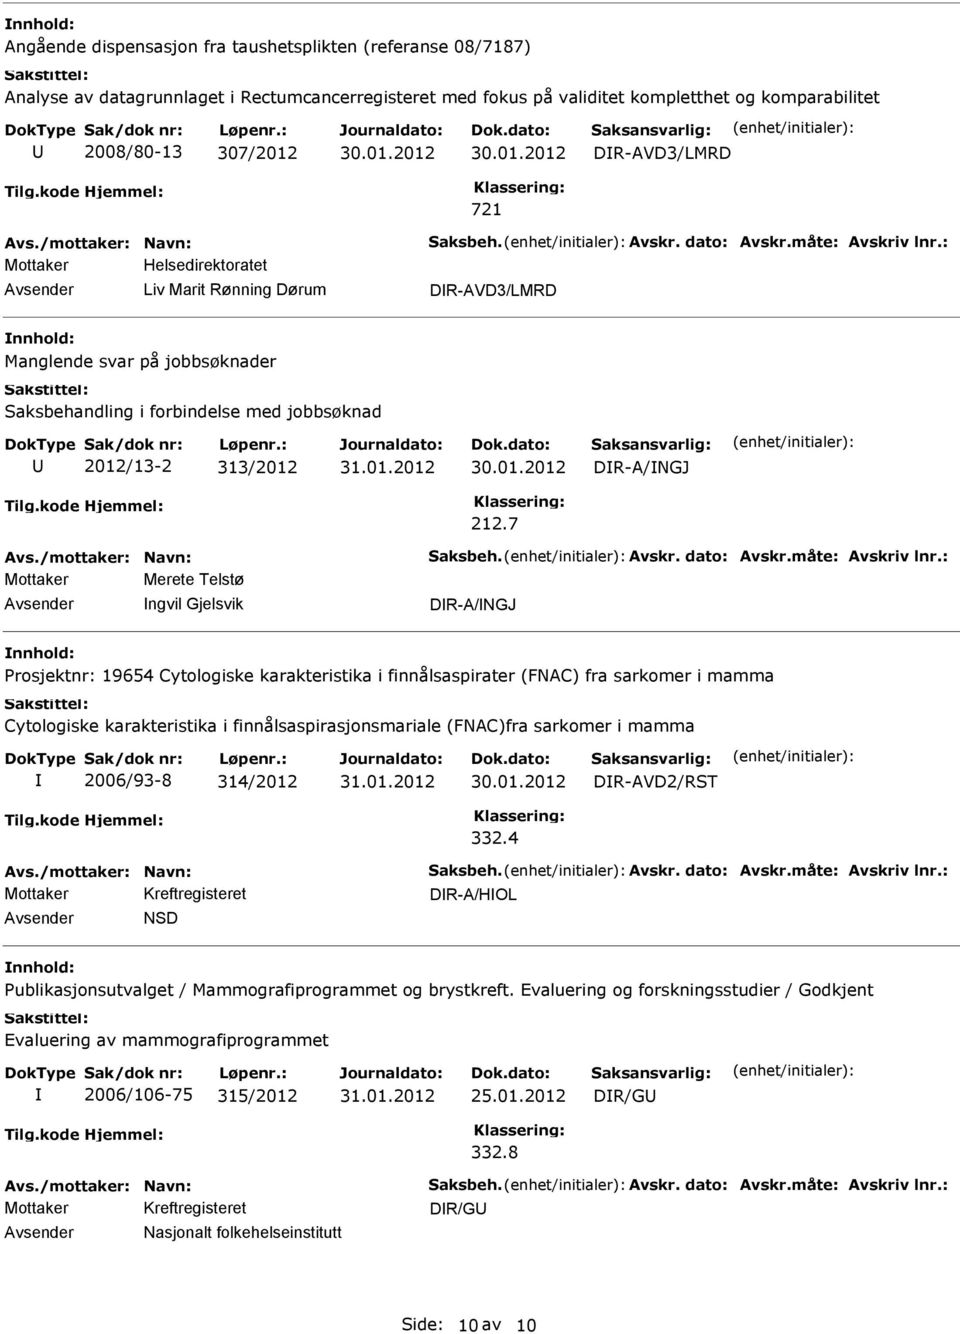 7 Mottaker Merete Telstø ngvil Gjelsvik DR-A/NGJ Prosjektnr: 19654 Cytologiske karakteristika i finnålsaspirater (FNAC) fra sarkomer i mamma Cytologiske karakteristika i finnålsaspirasjonsmariale